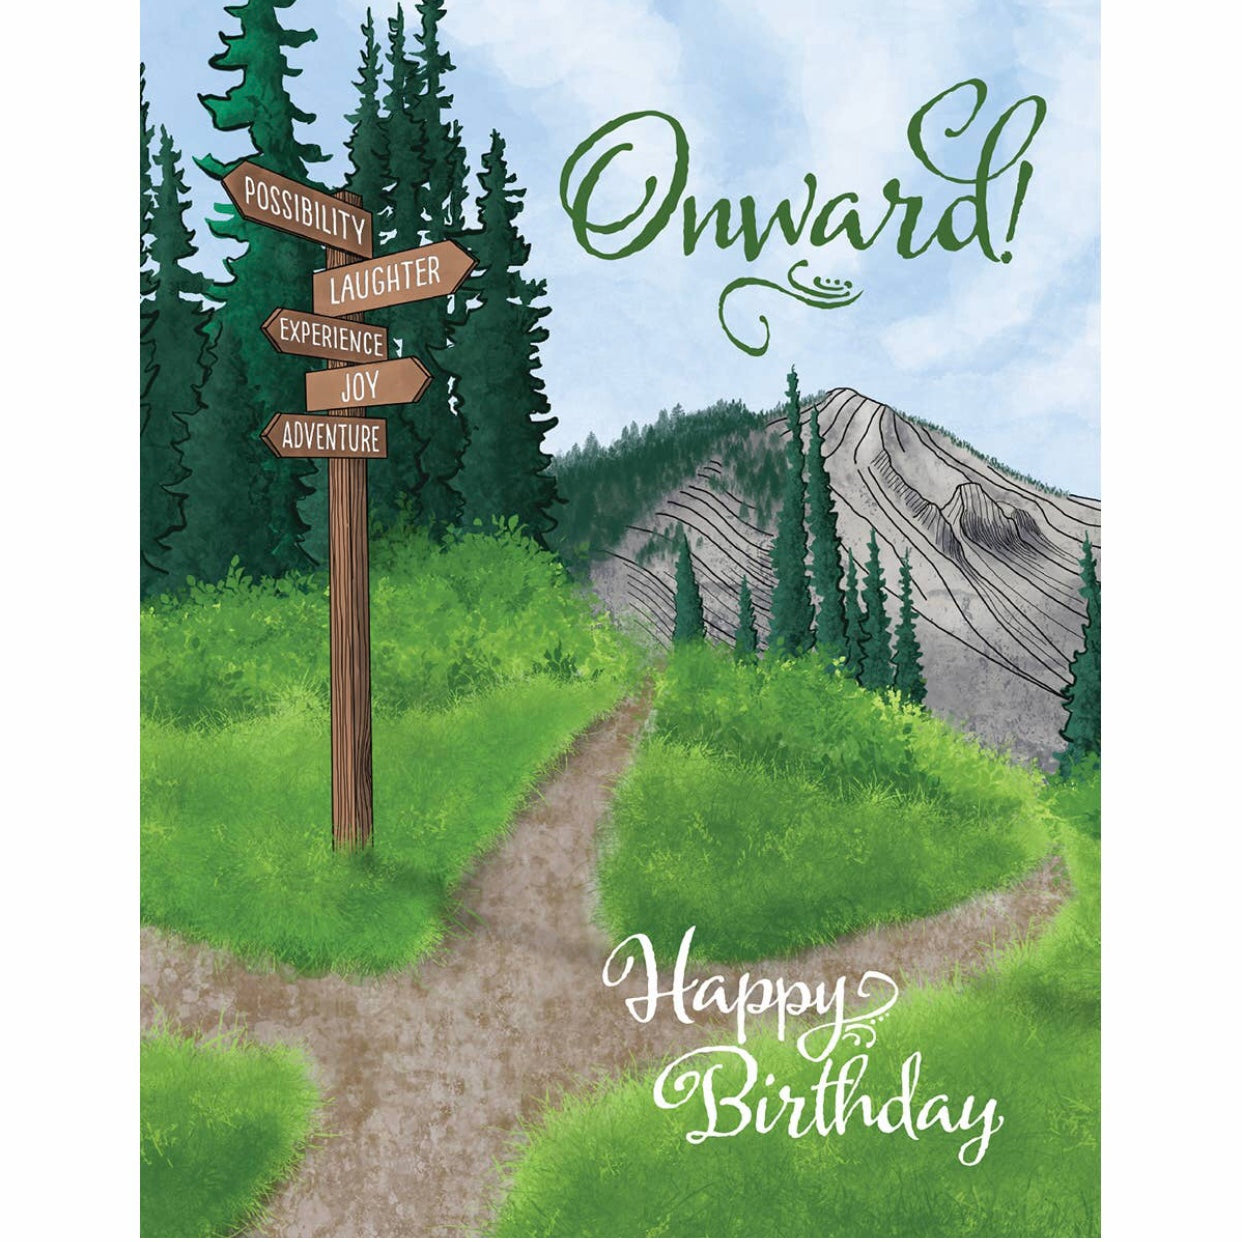 Onward Happy Birthday greeting card